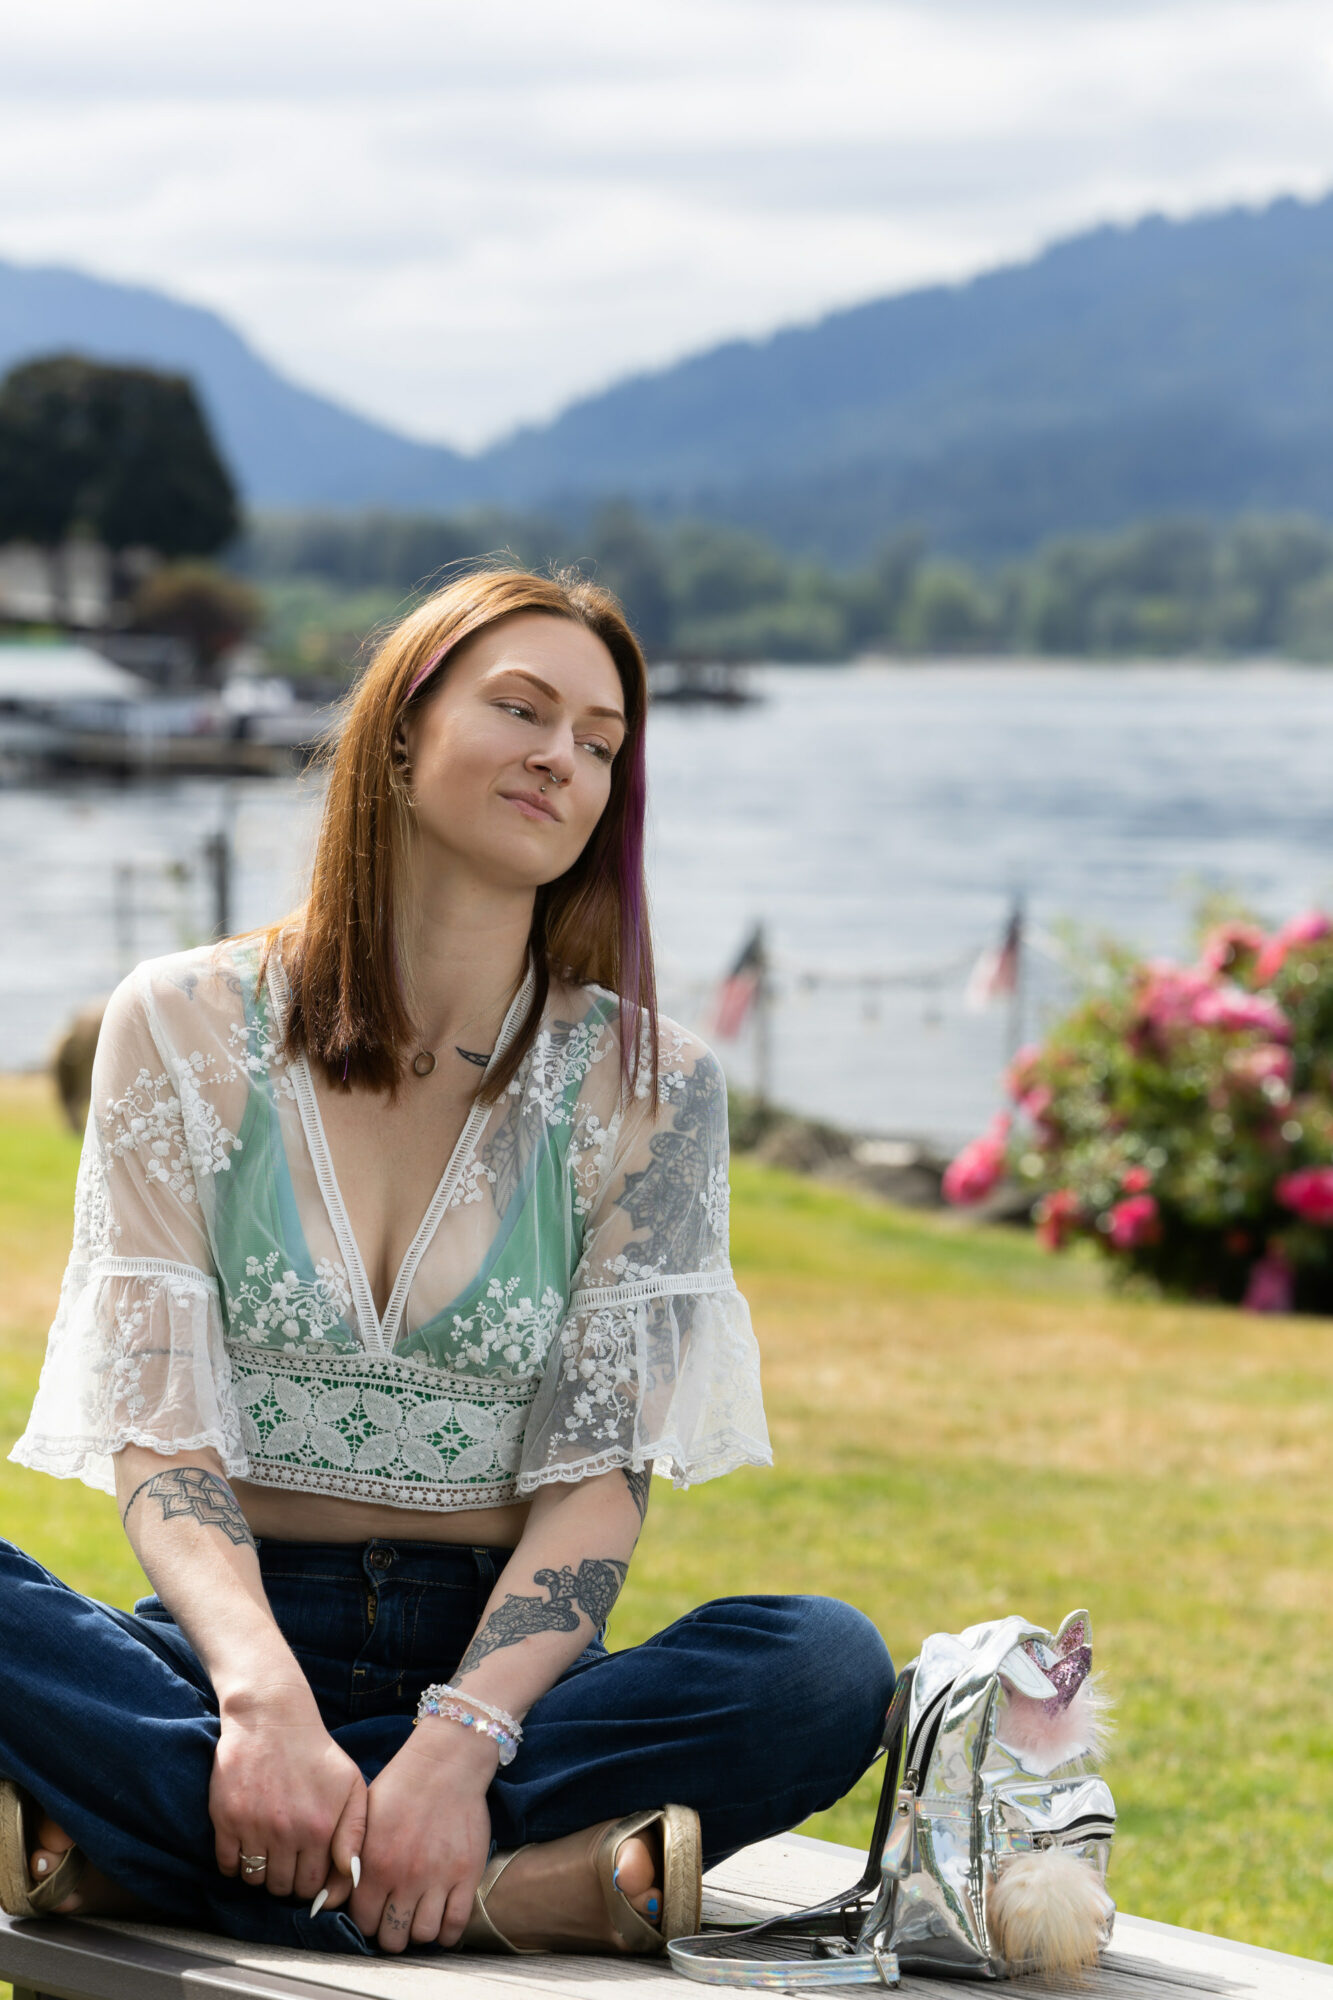 Membro do Empowered Voices vestindo uma blusa verde e de renda e jeans azul, na grama com lago e montanhas ao fundo